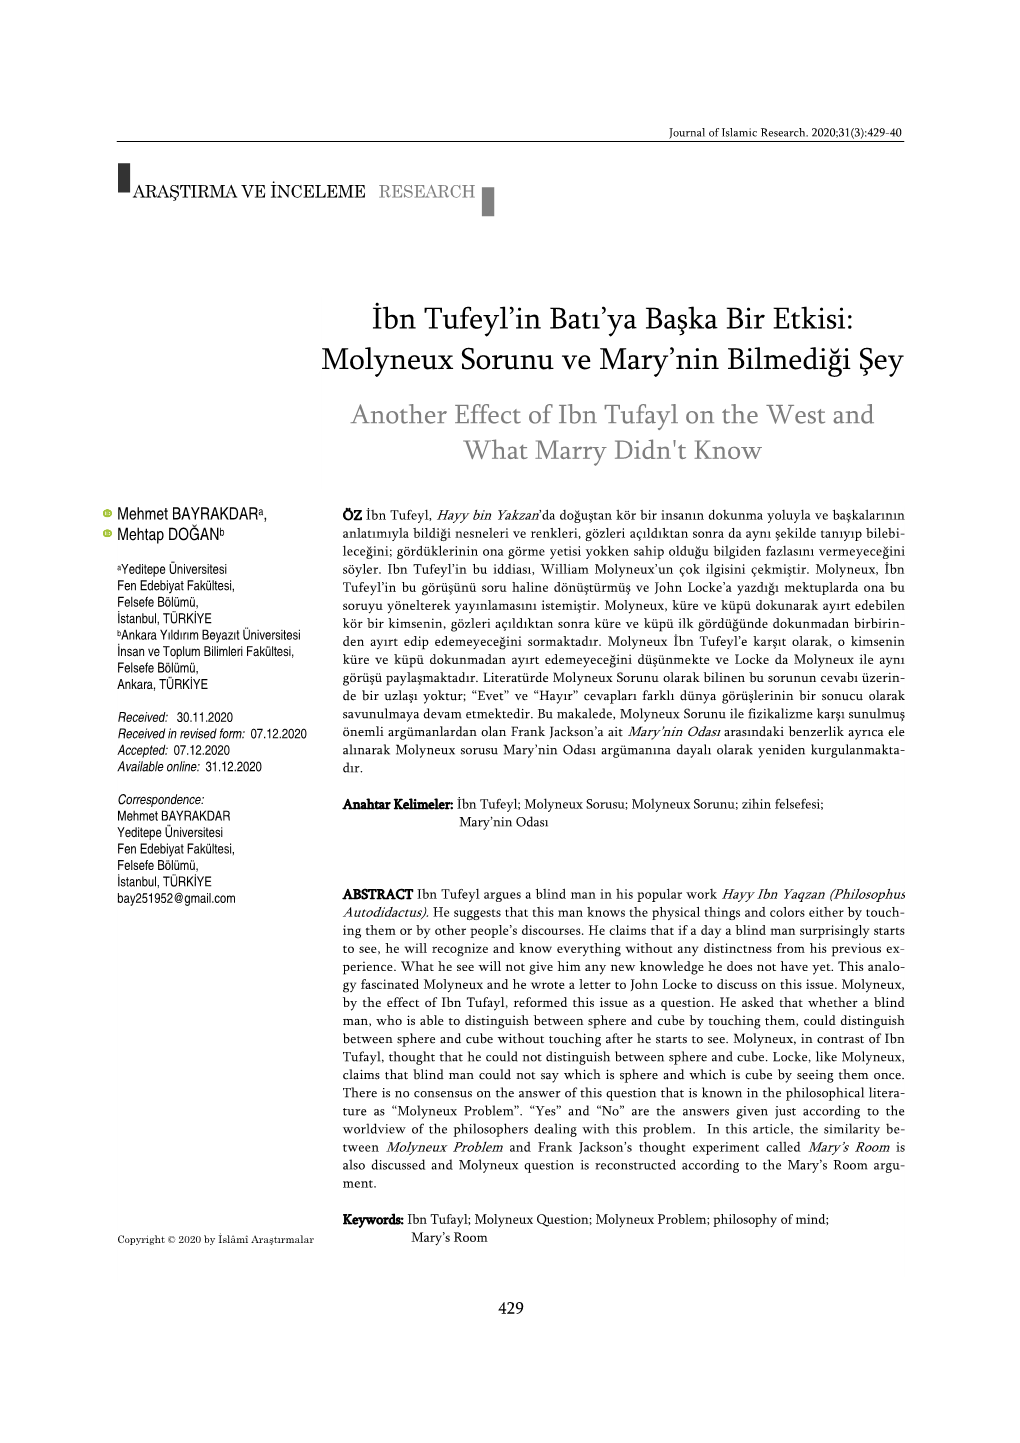 İbn Tufeyl'in Batı'ya Başka Bir Etkisi:Molyneux Sorunu Ve Mary'nin